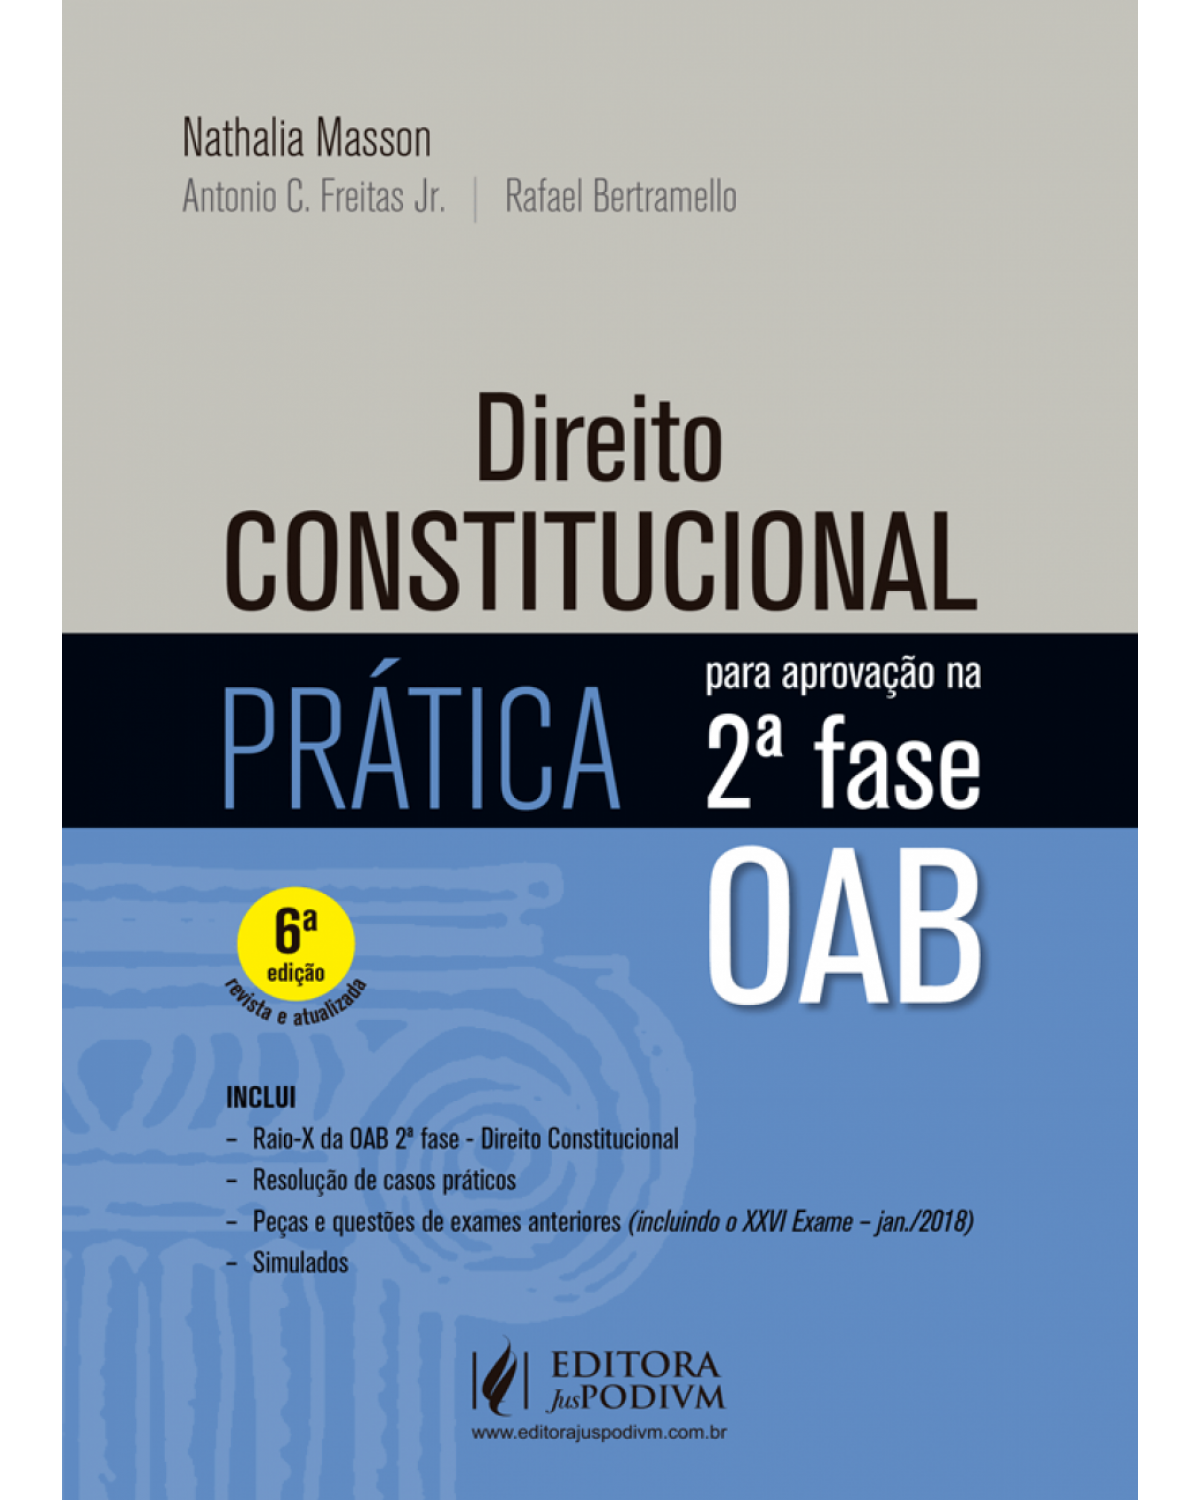 Direito constitucional - prática para aprovação na 2ª fase OAB - 6ª Edição | 2018